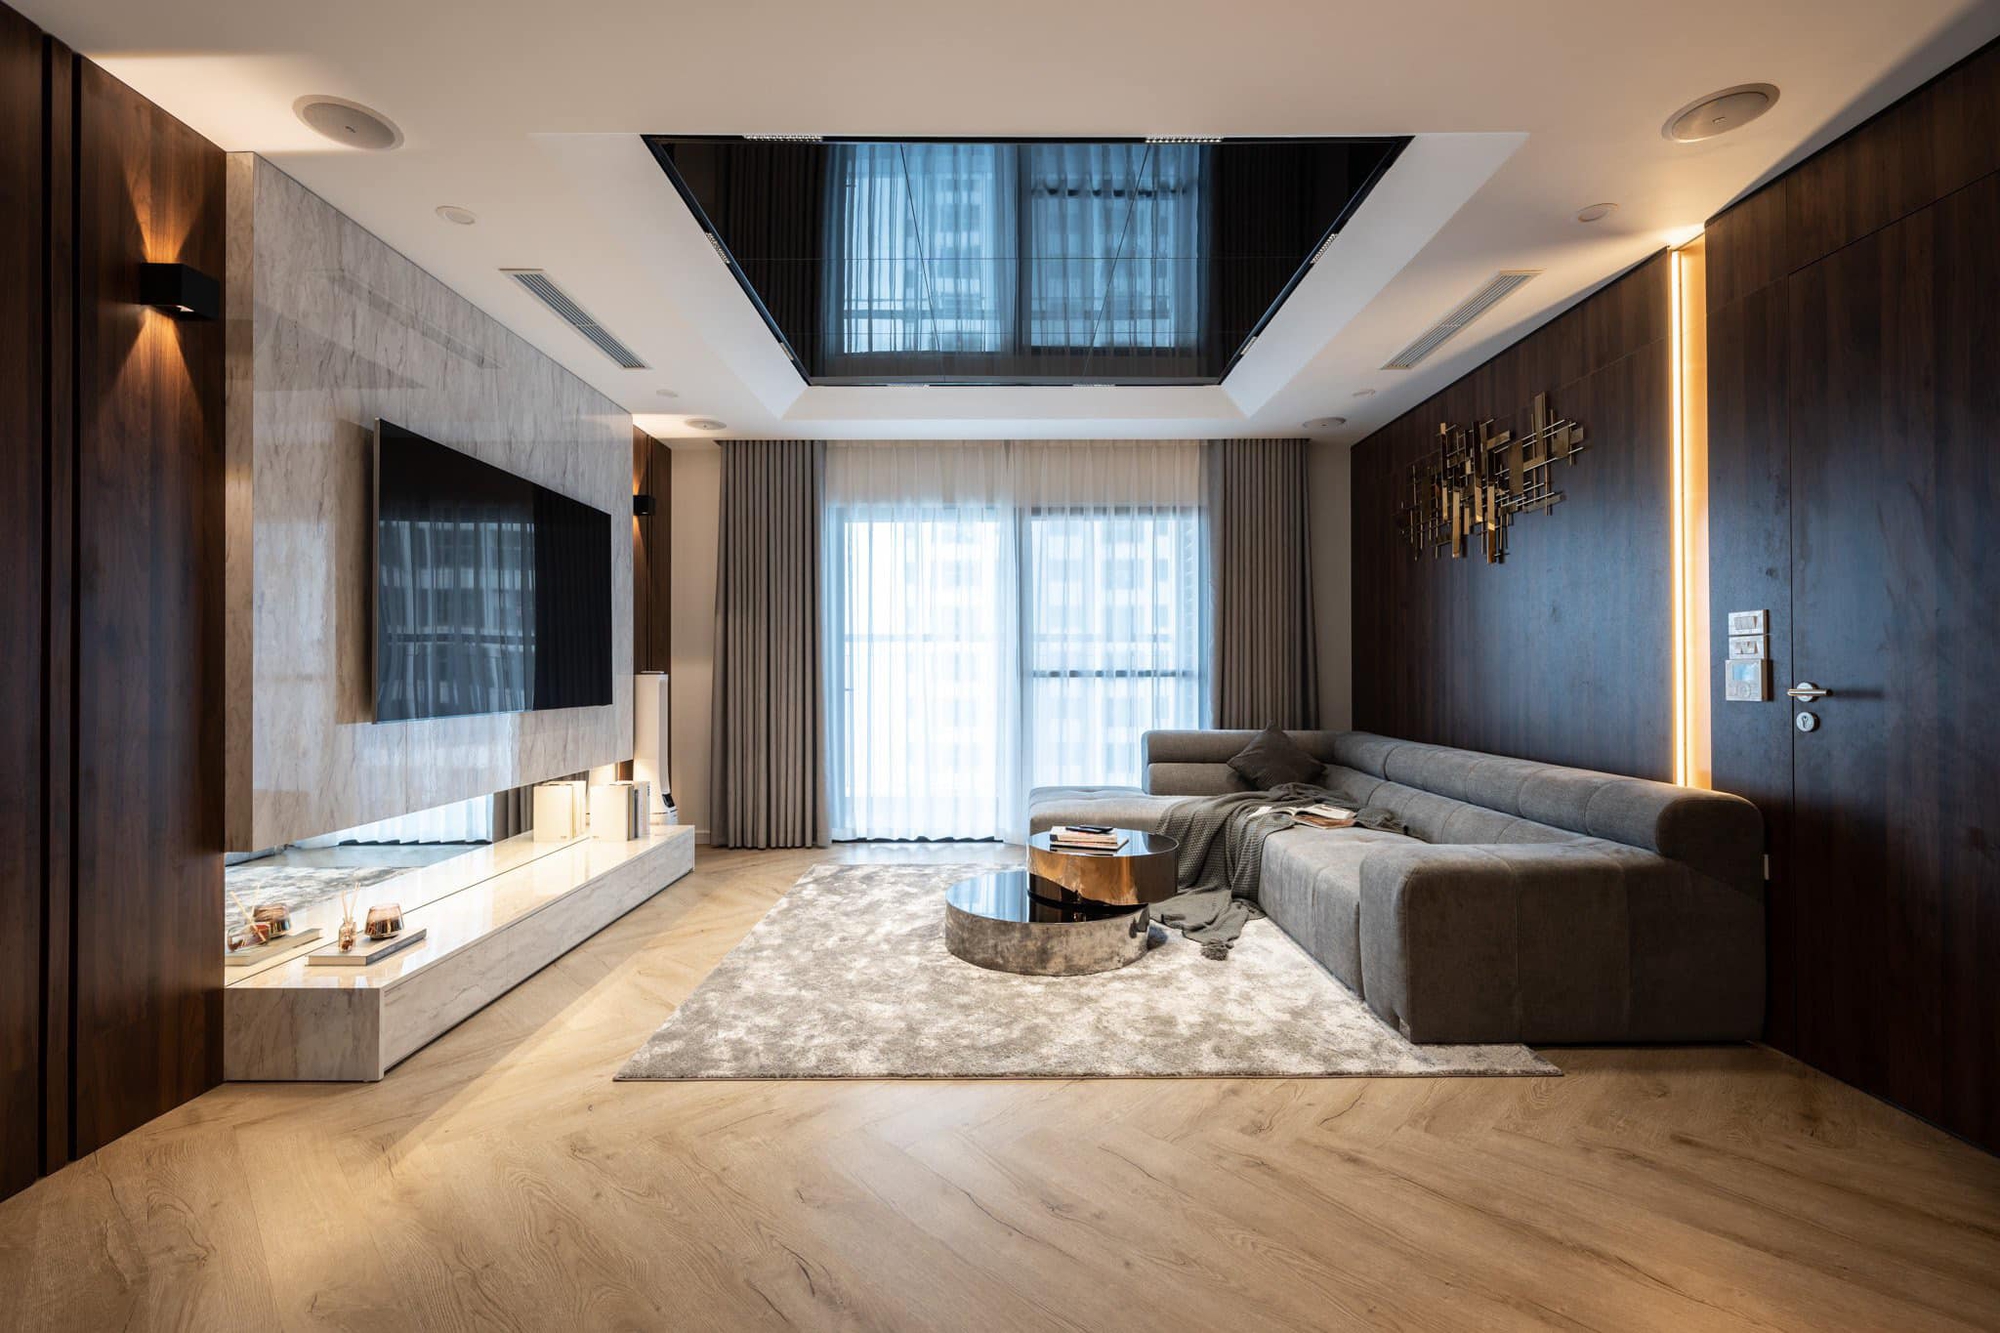 Căn hộ 160m² với 3 phòng ngủ theo phong cách sang trọng, lộng lẫy với chi phí hết 3 tỷ của cặp vợ chồng ở Hà Nội